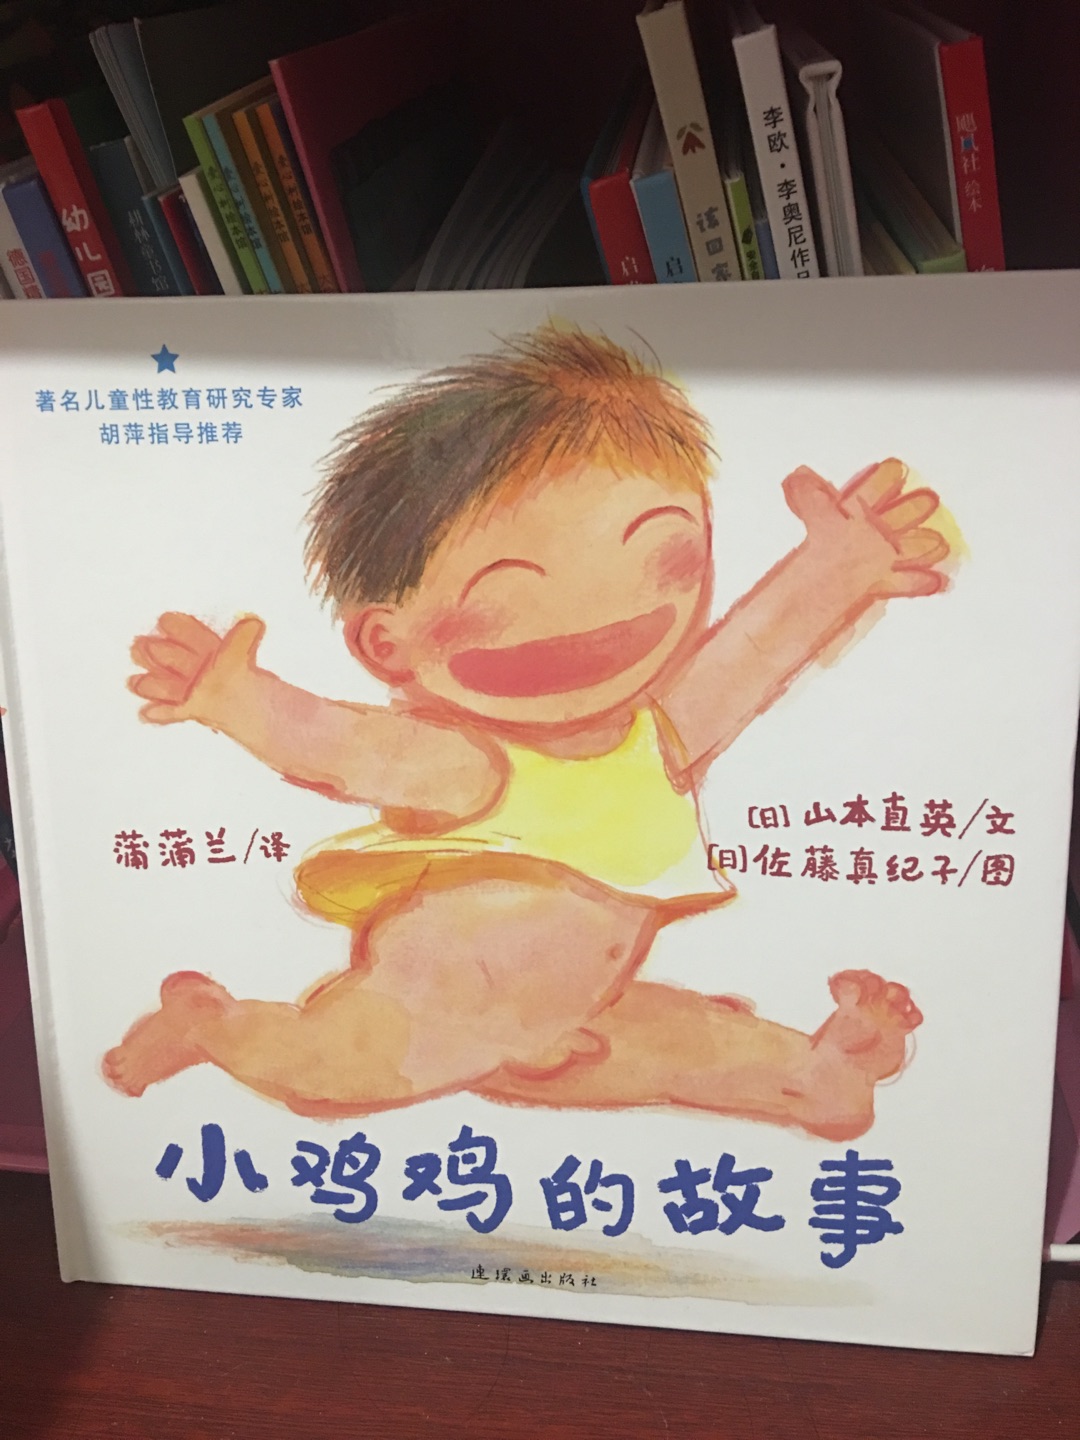 指着封面问宝宝这是什么，他来了句“chicken”，两周四男宝对这本书还挺有兴趣的